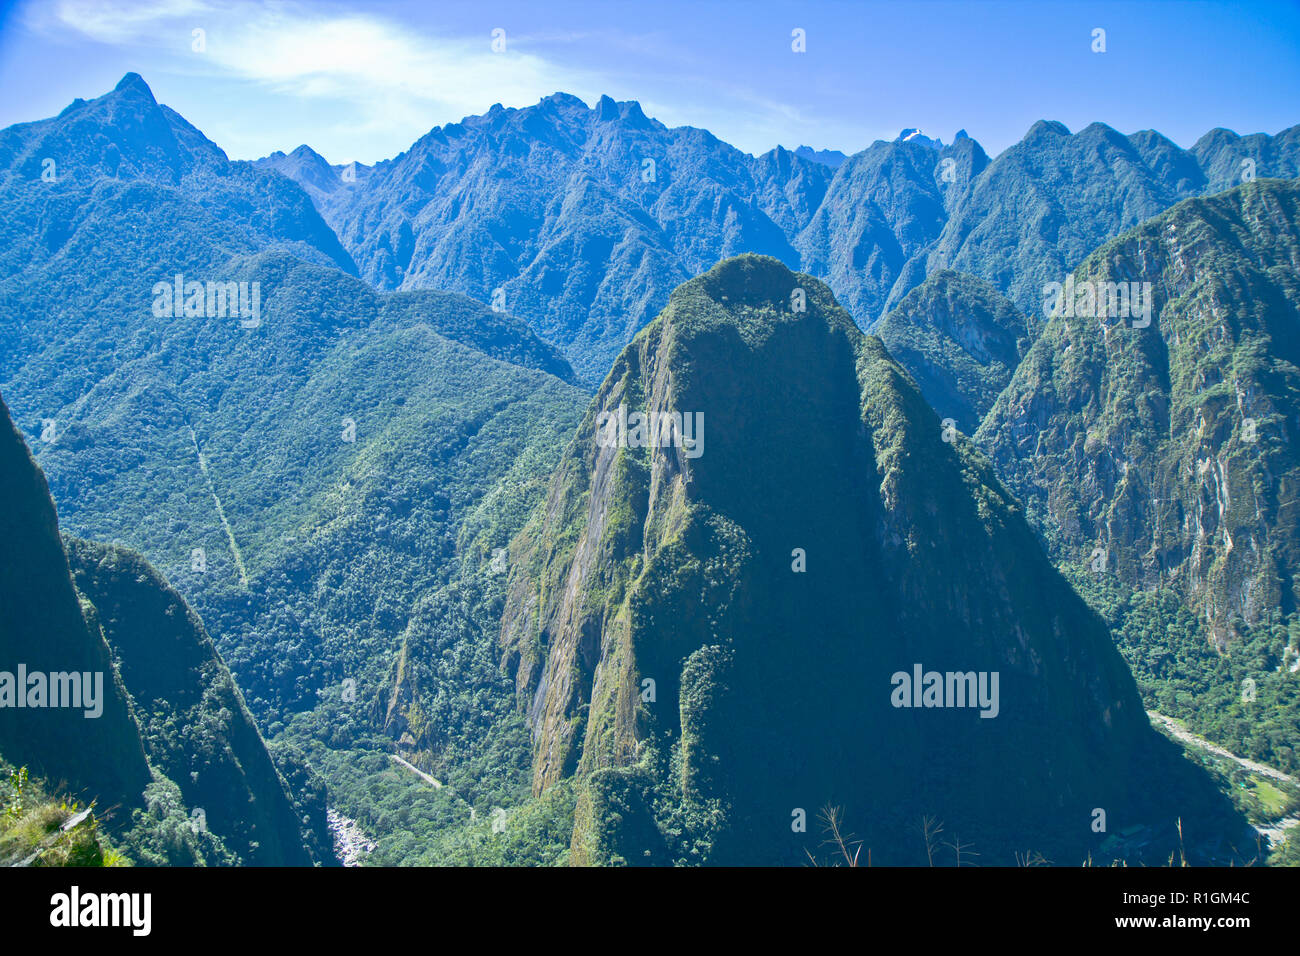 Le Machu Picchu, une citadelle Inca perchée dans les montagnes des Andes, au Pérou, au-dessus de la vallée de la rivière Urubamba. Construit au 15ème siècle et plus tard abandonded Banque D'Images